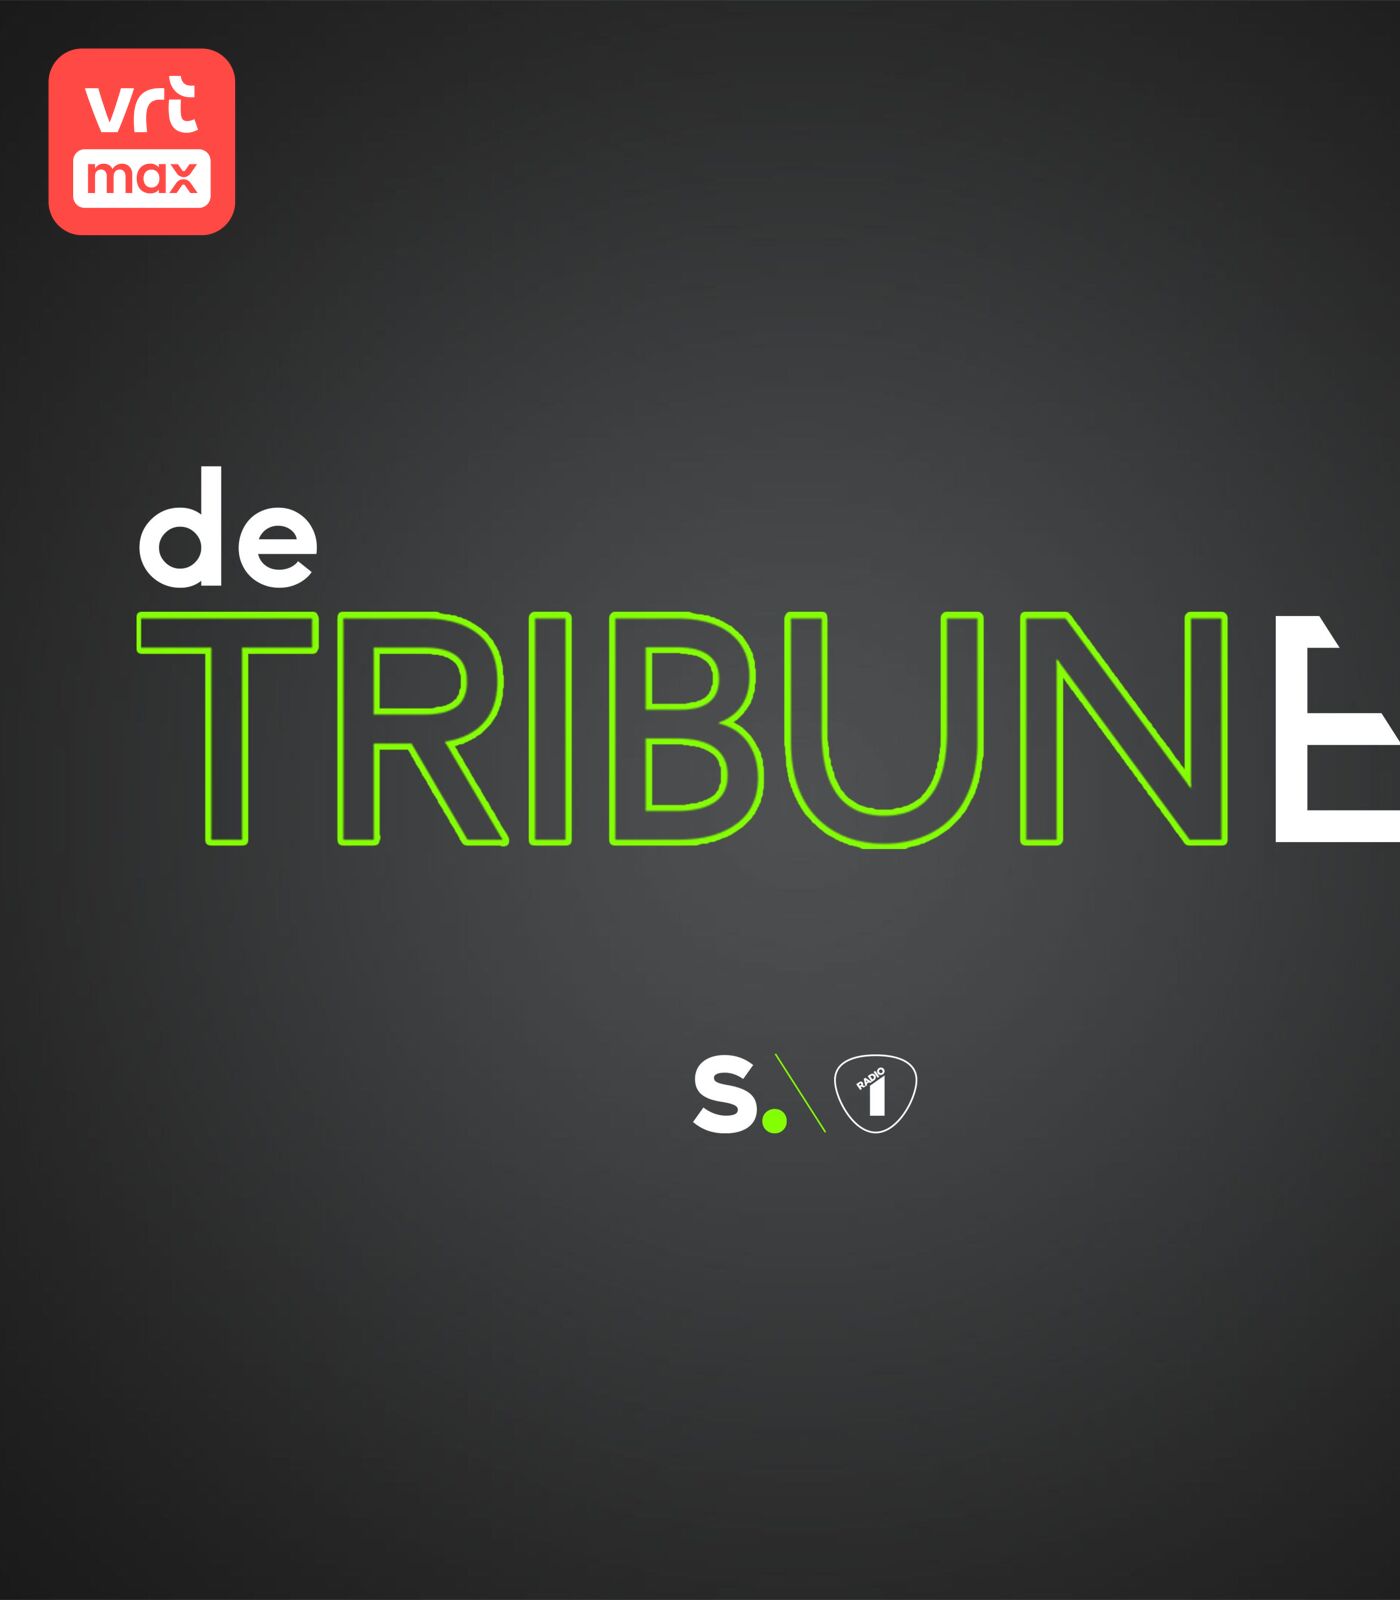 De Tribune logo